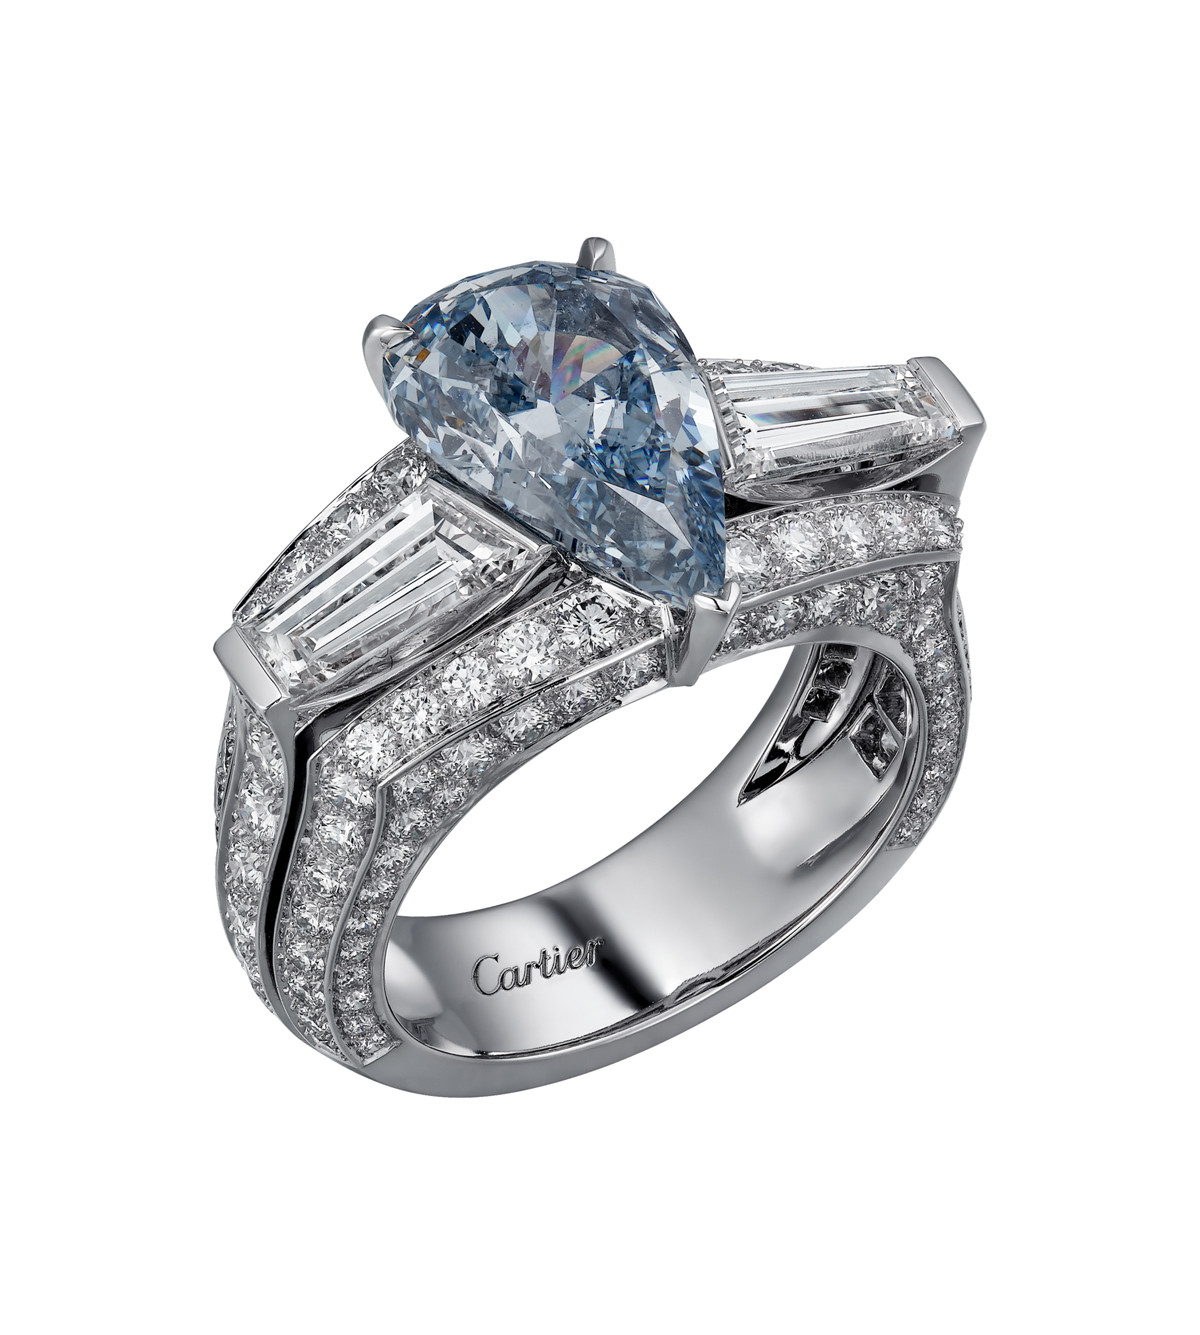 宝格丽_一枚BVLGARI宝格丽华美蓝钻戒指于纽约佳士得拍得1800万美元|腕表之家-珠宝